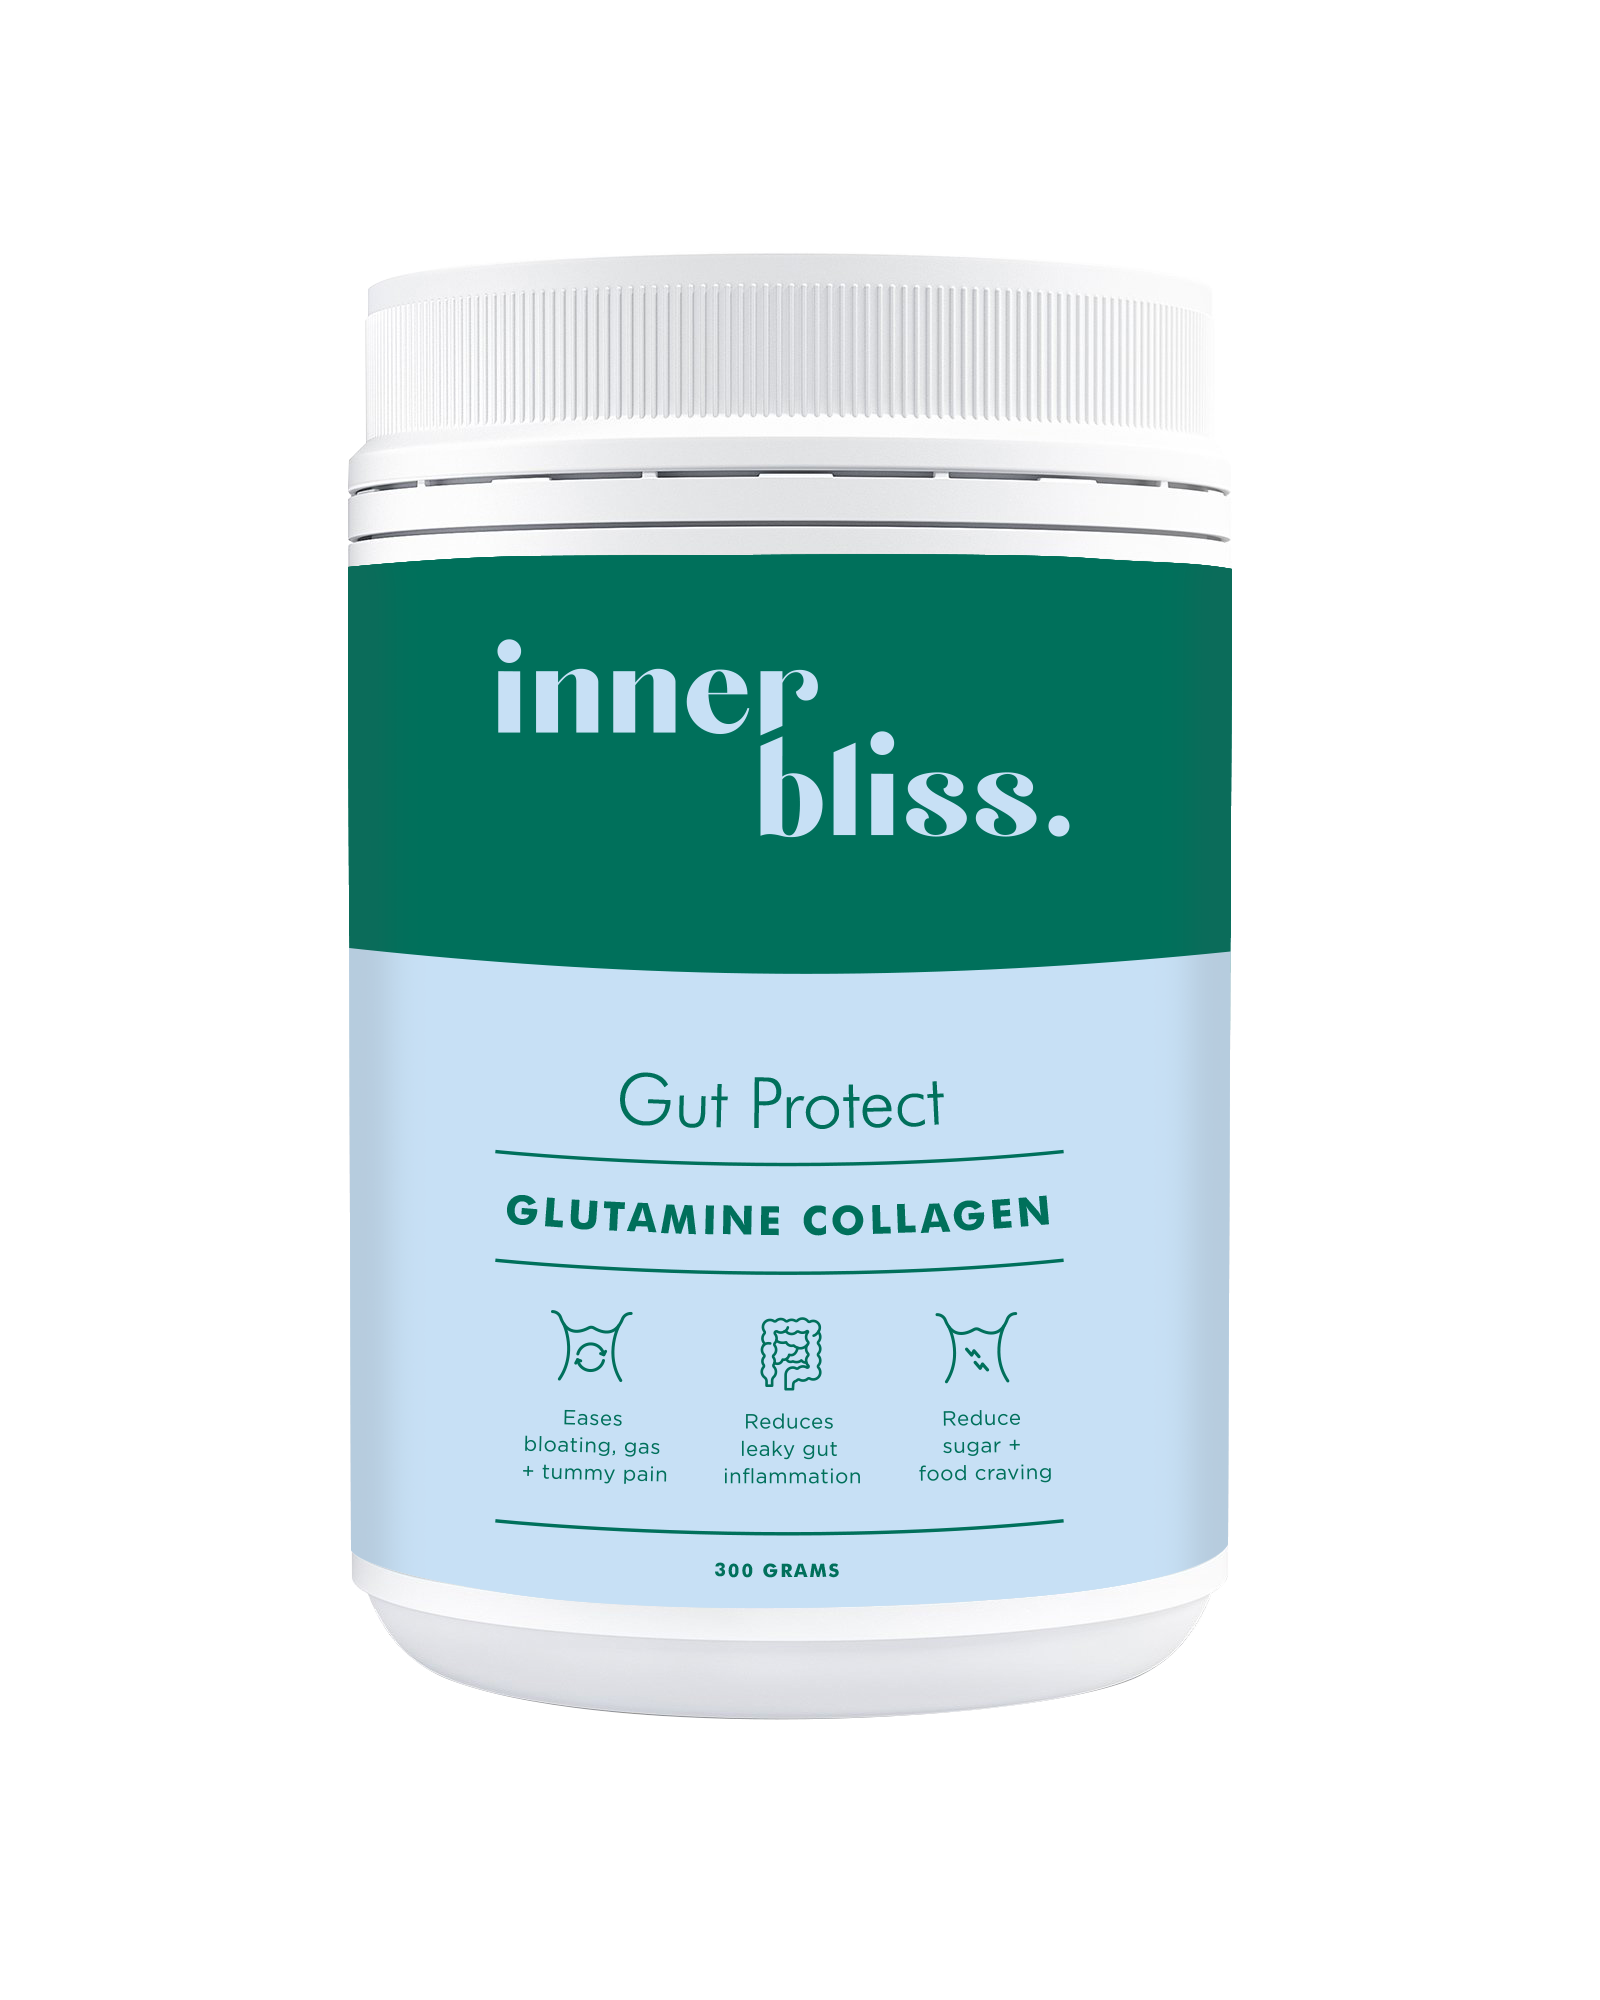 inner bliss gut protect glutamine collagen 300g